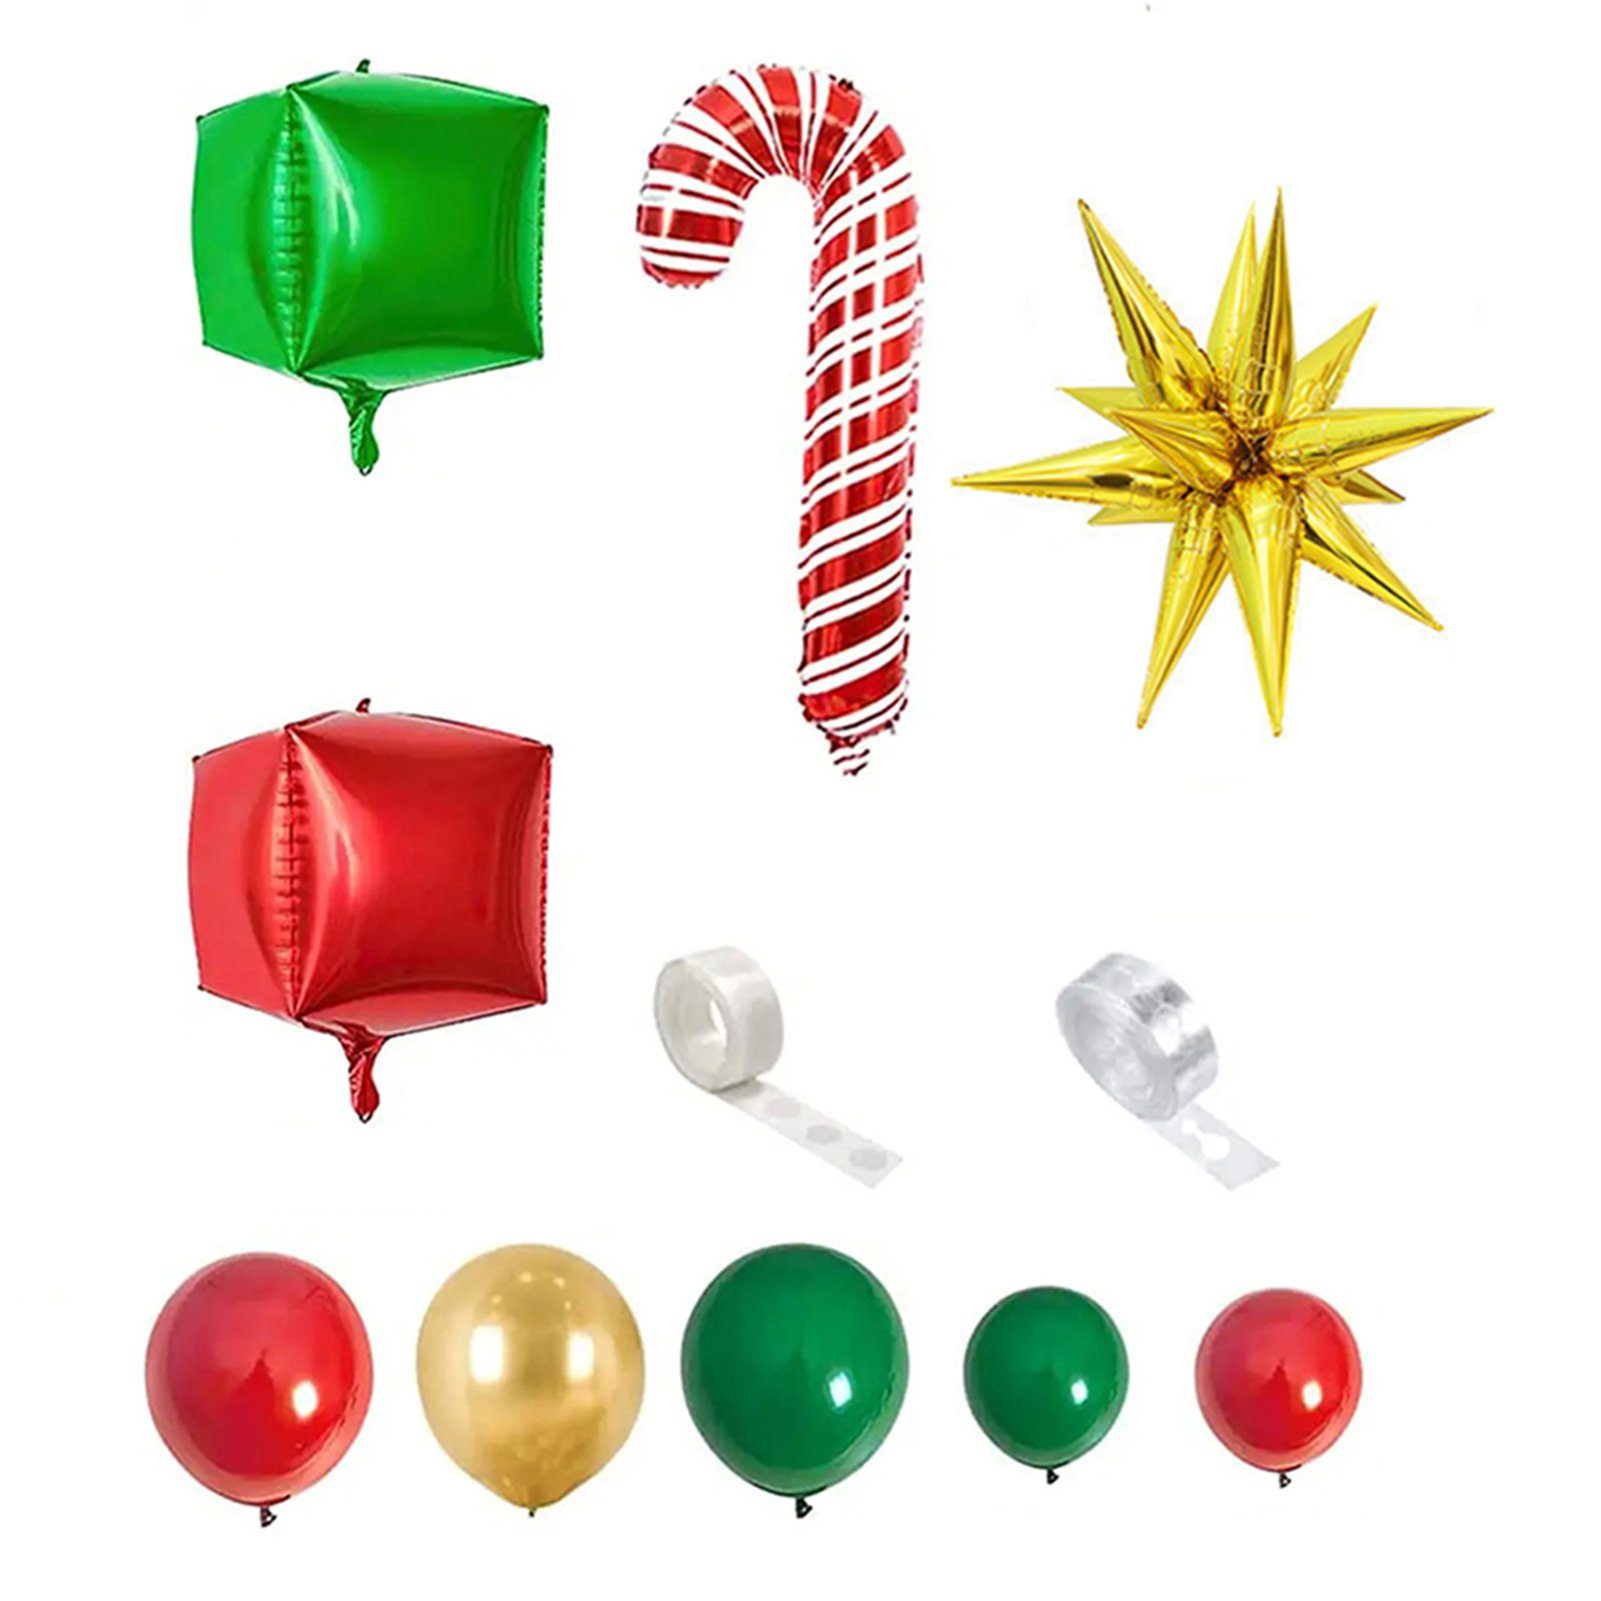 Blusmart Christbaumschmuck Weihnachts-Luftballons-Girlanden-Set Mit Sternen, Luftballons